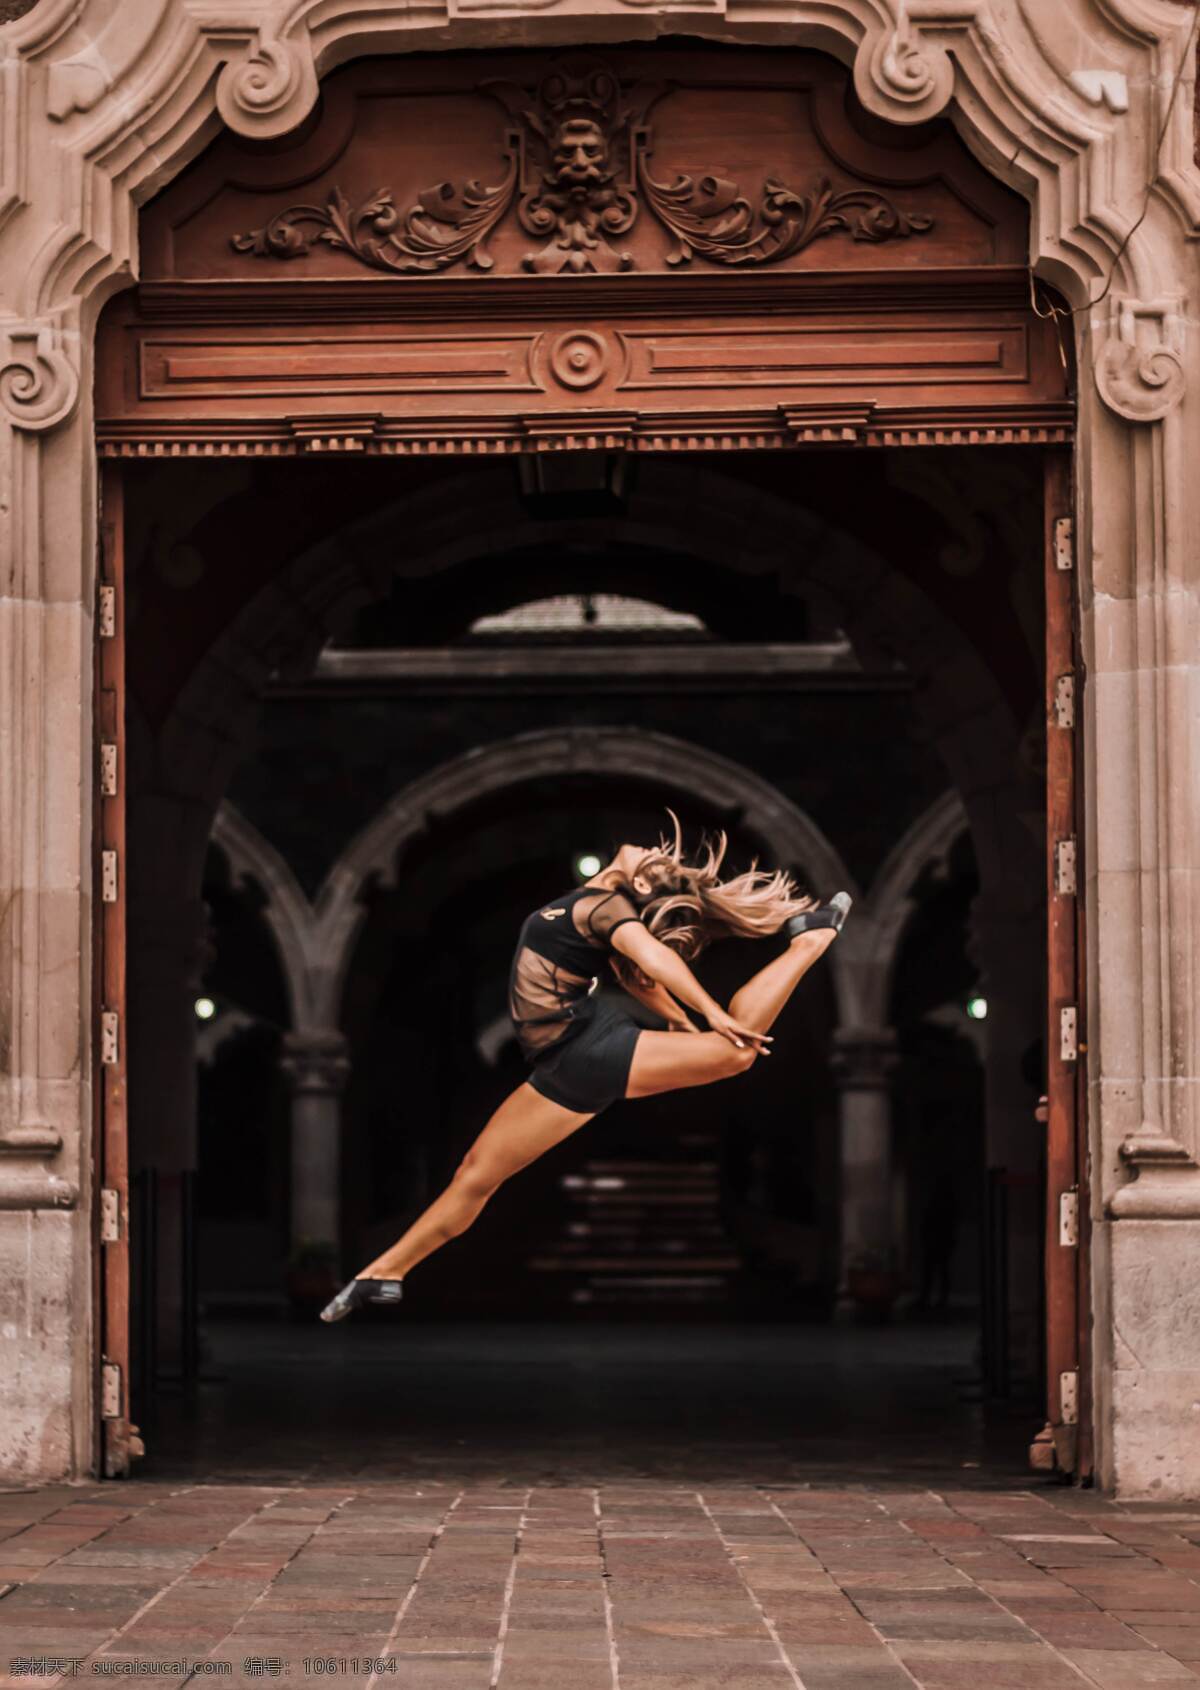 跳舞 女性 舞蹈家 女人 跳跃 舞蹈 门口 建筑 芭蕾 芭蕾舞者 芭蕾舞 拱门 人 侧影 艺术 黑 对比 光影 人物 人物图库 女性女人